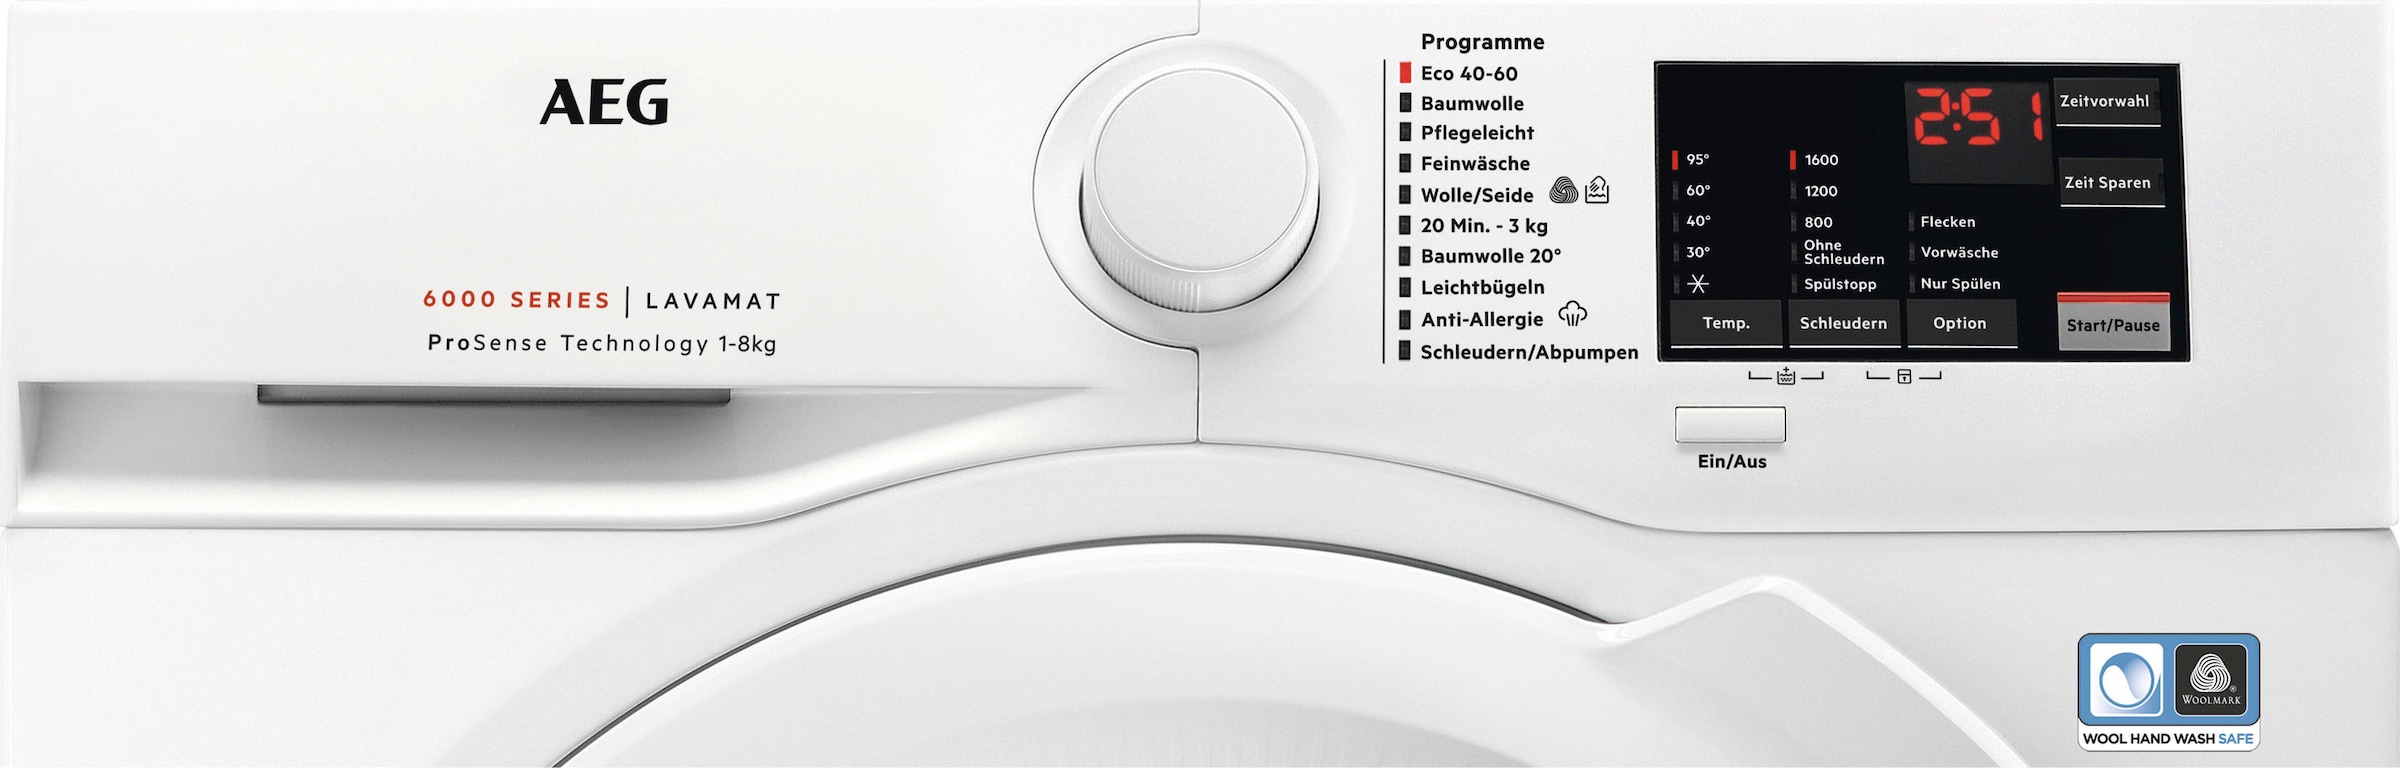 AEG Waschmaschine L6FA68FL, Serie 3 Programm Dampf Hygiene-/ U/min, XXL mit »L6FA68FL«, Jahren Garantie 1600 8 6000 Anti-Allergie kg, ProSense-Technologie, mit mit